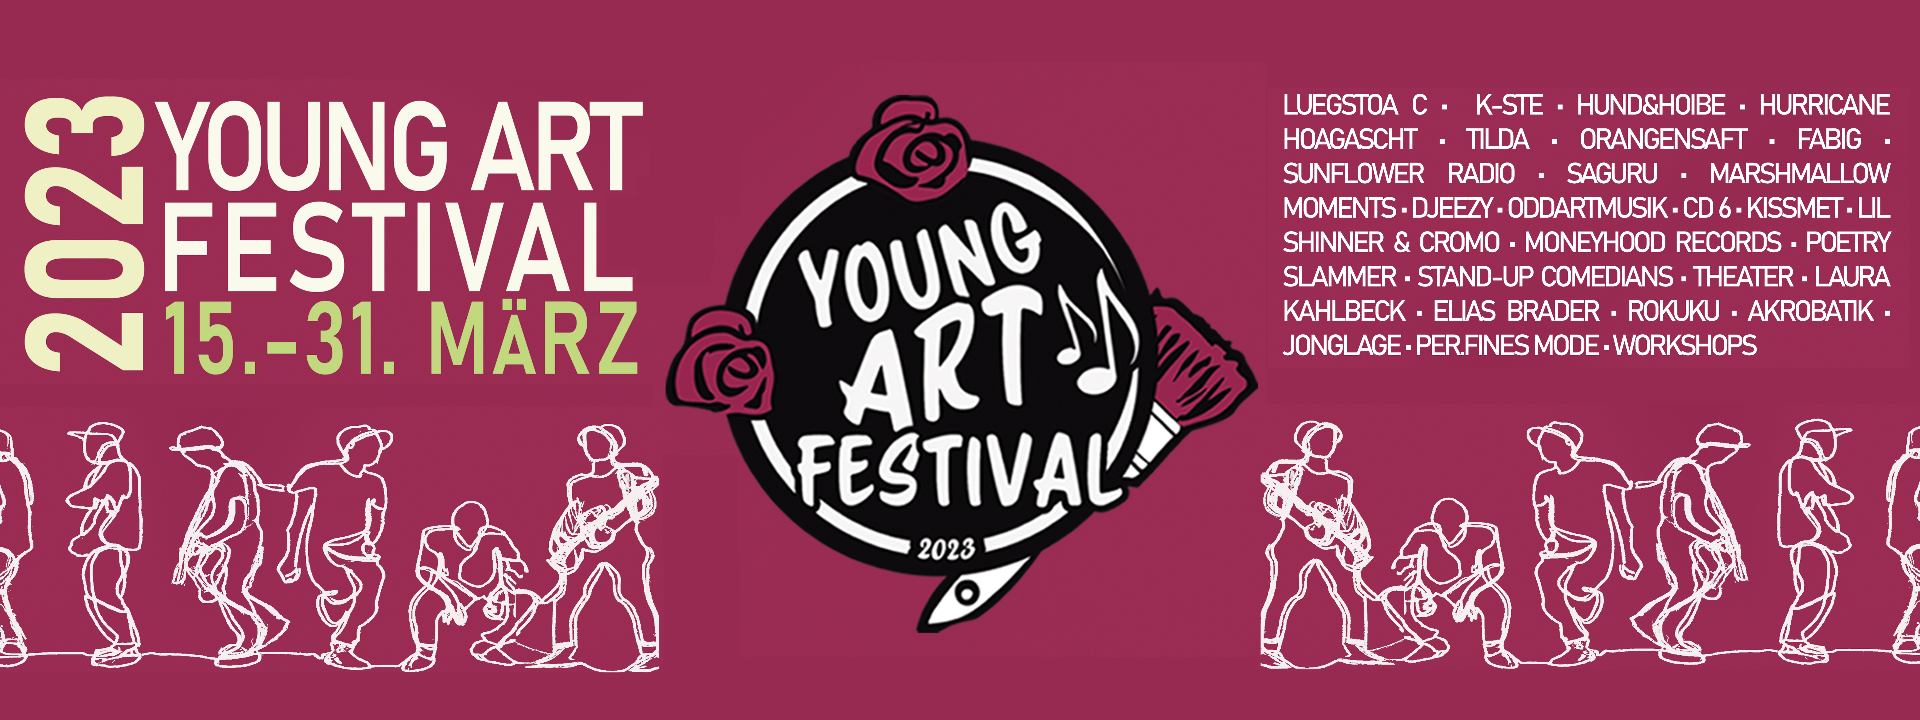 Logo und Datum des Young Art Festival + Aufzählung der Künstler*innen + Zeichnungen von jungen Menschen 